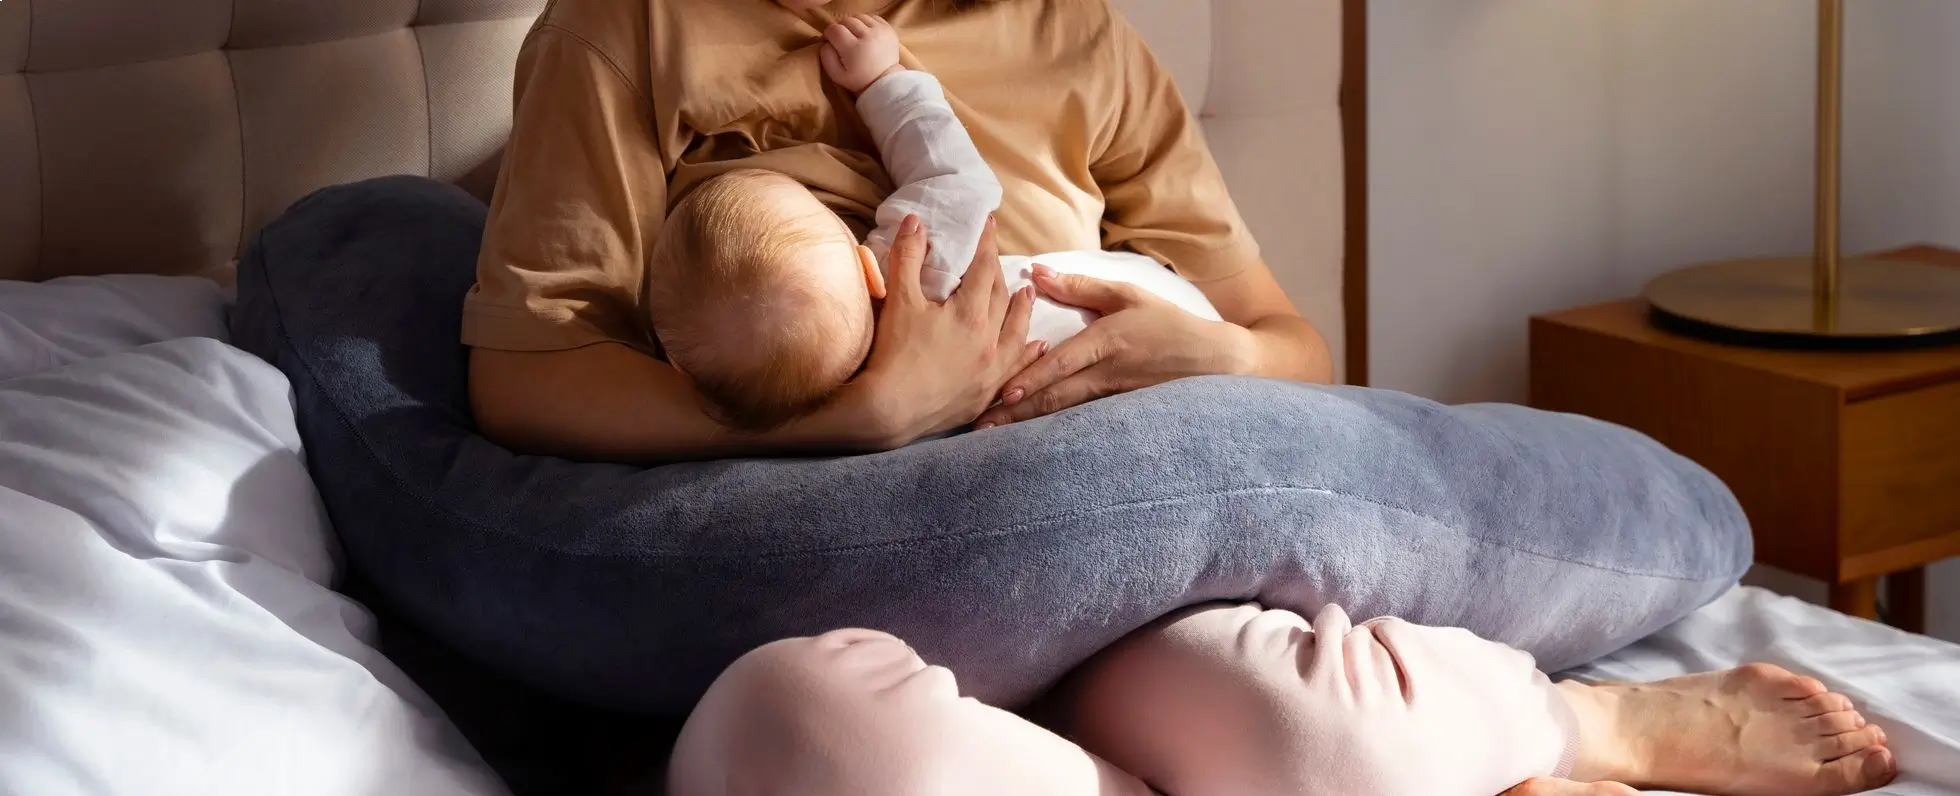 عدم قبول الطفل الرضاعة الطبيعية